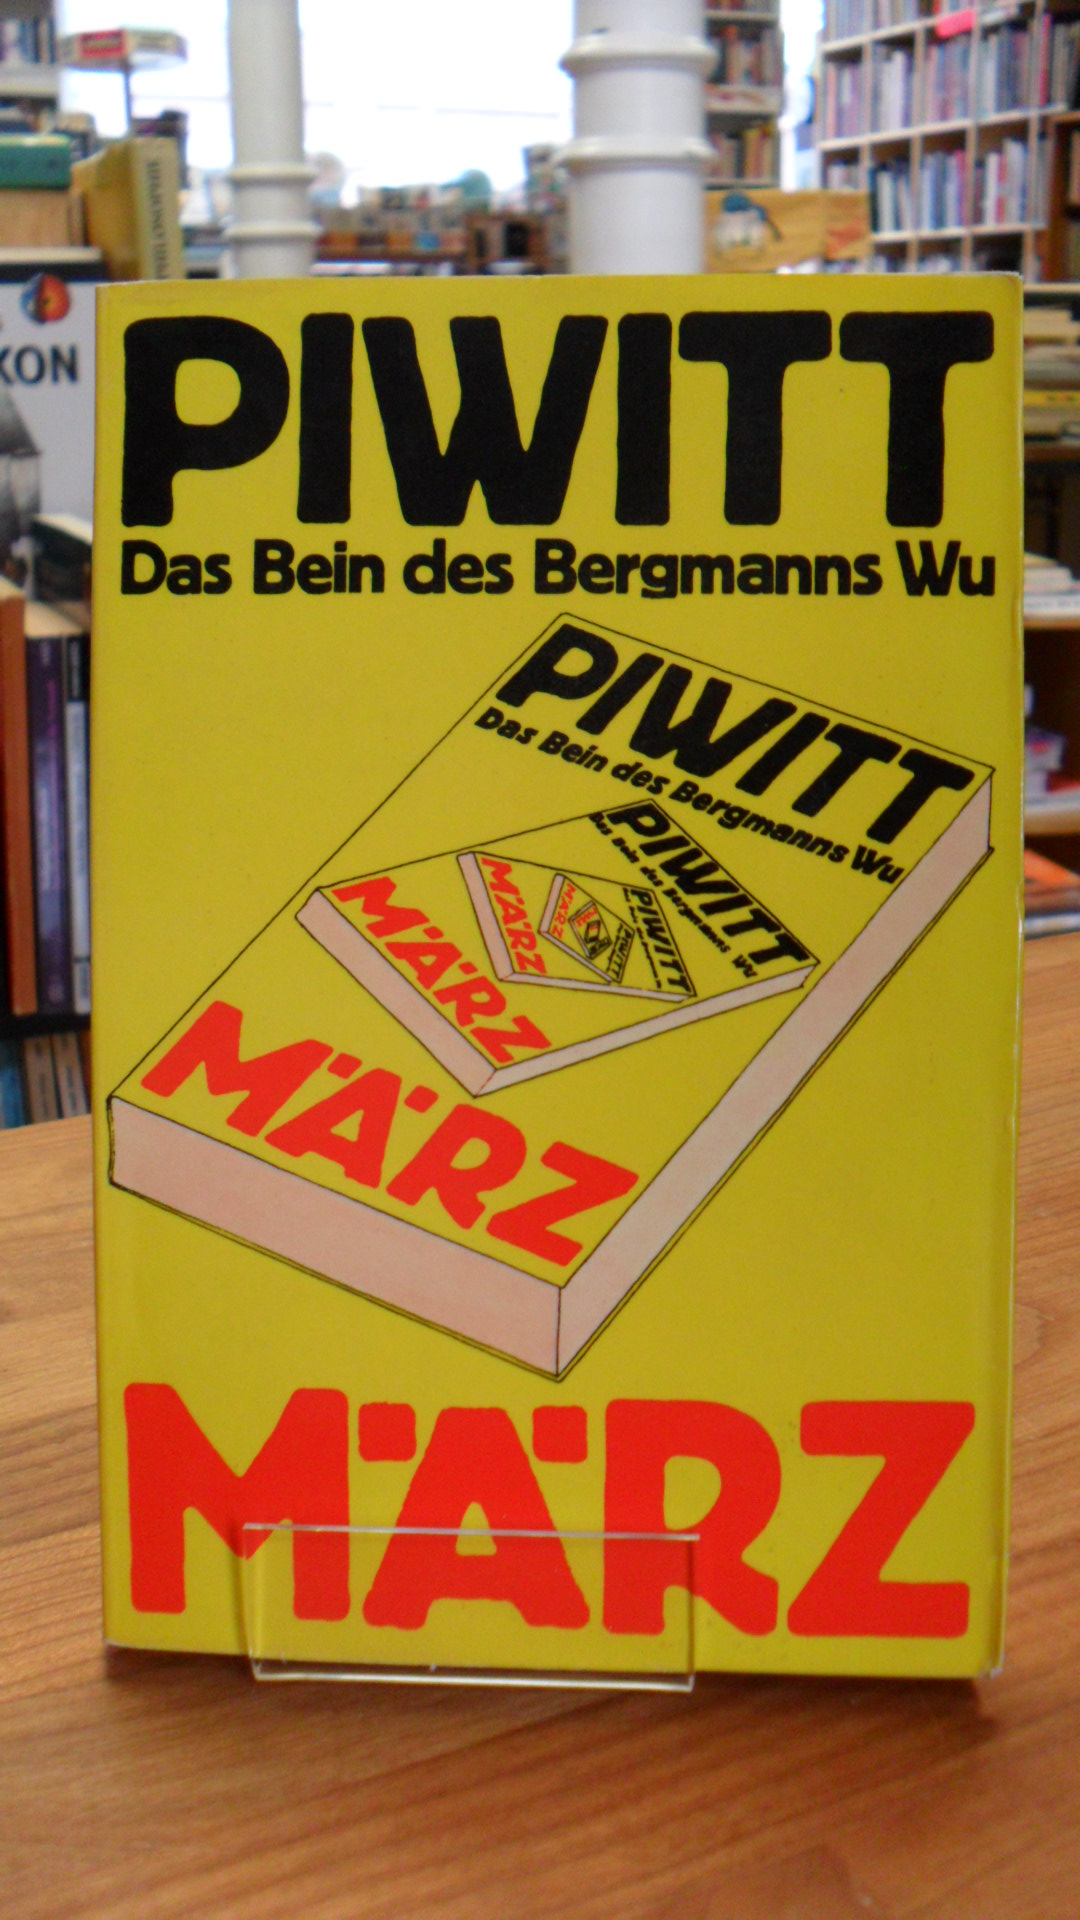 Piwitt, Das Bein des Bergmanns Wu – Praktische Literatur & literarische Praxis,